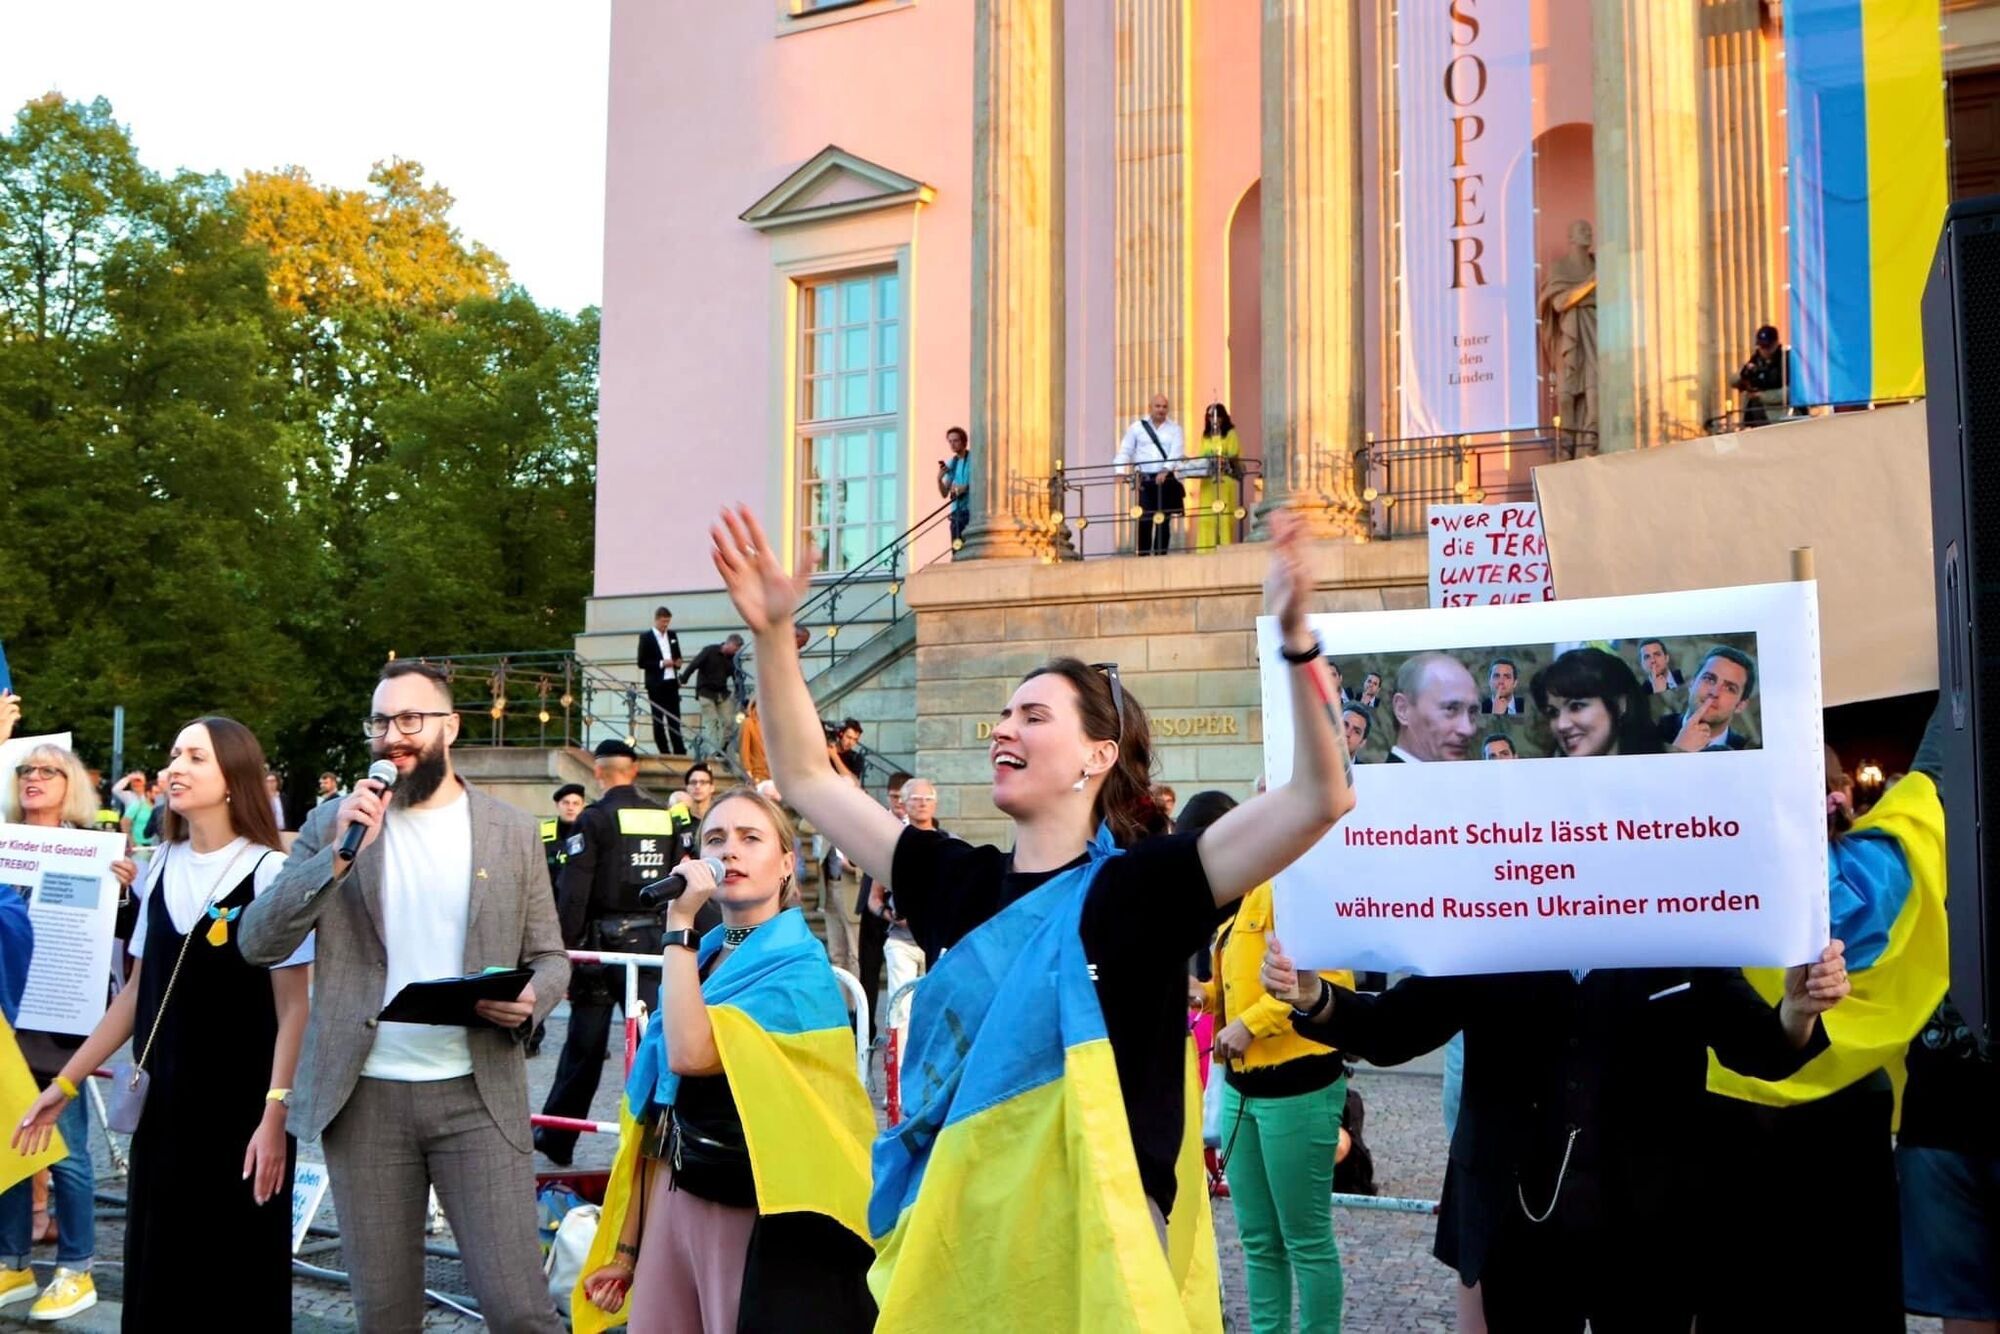 Українських активістів у Німеччині переслідують друзі Анни Нетребко: німецький диригент подав на протестувальників до суду